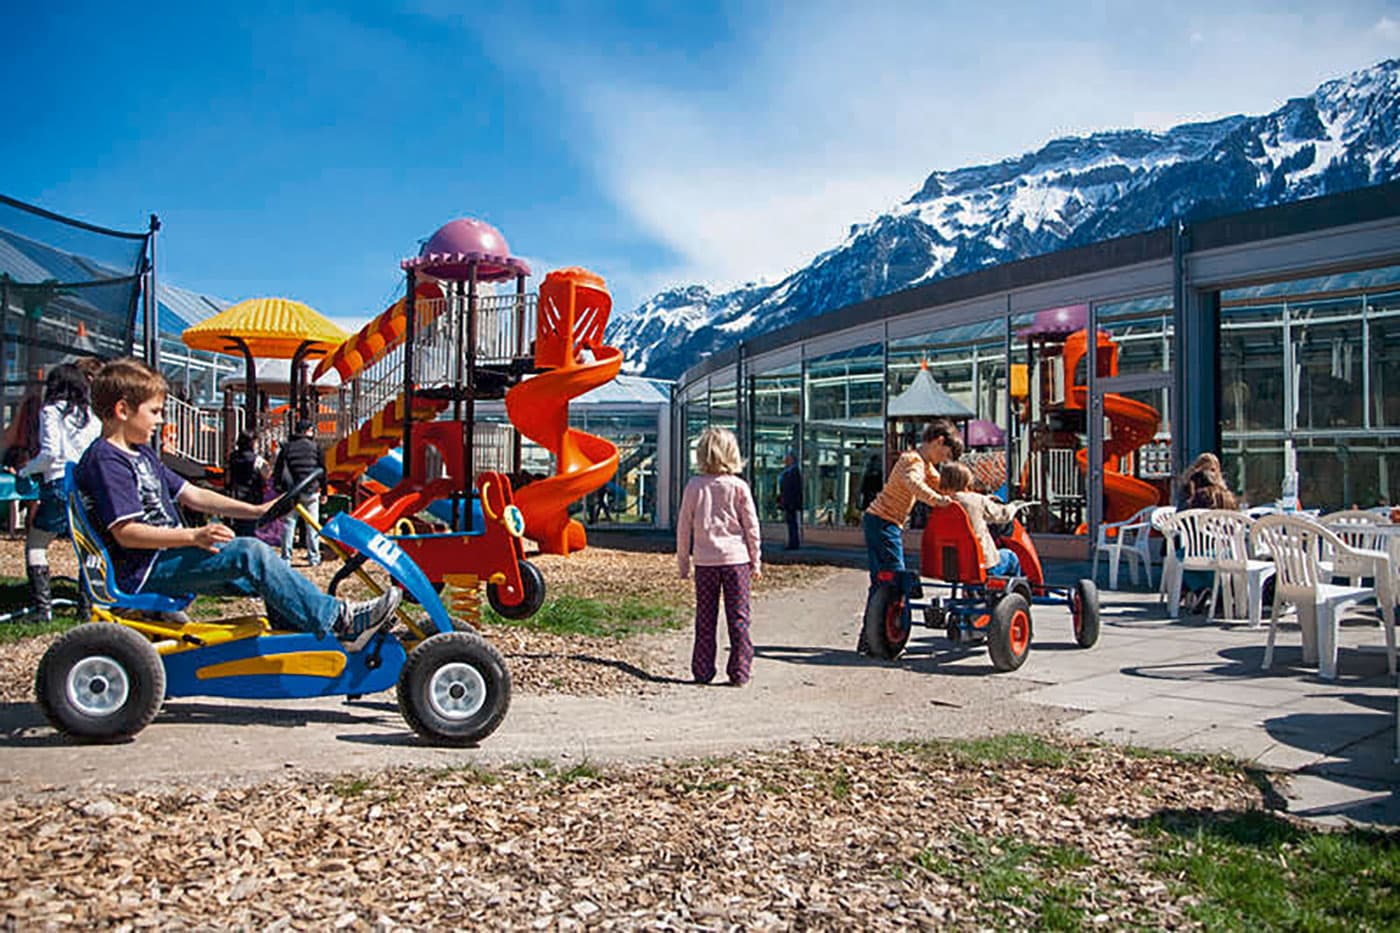 JungfrauPark Interlaken: Unterhaltung und Spannung für die ganze Familie